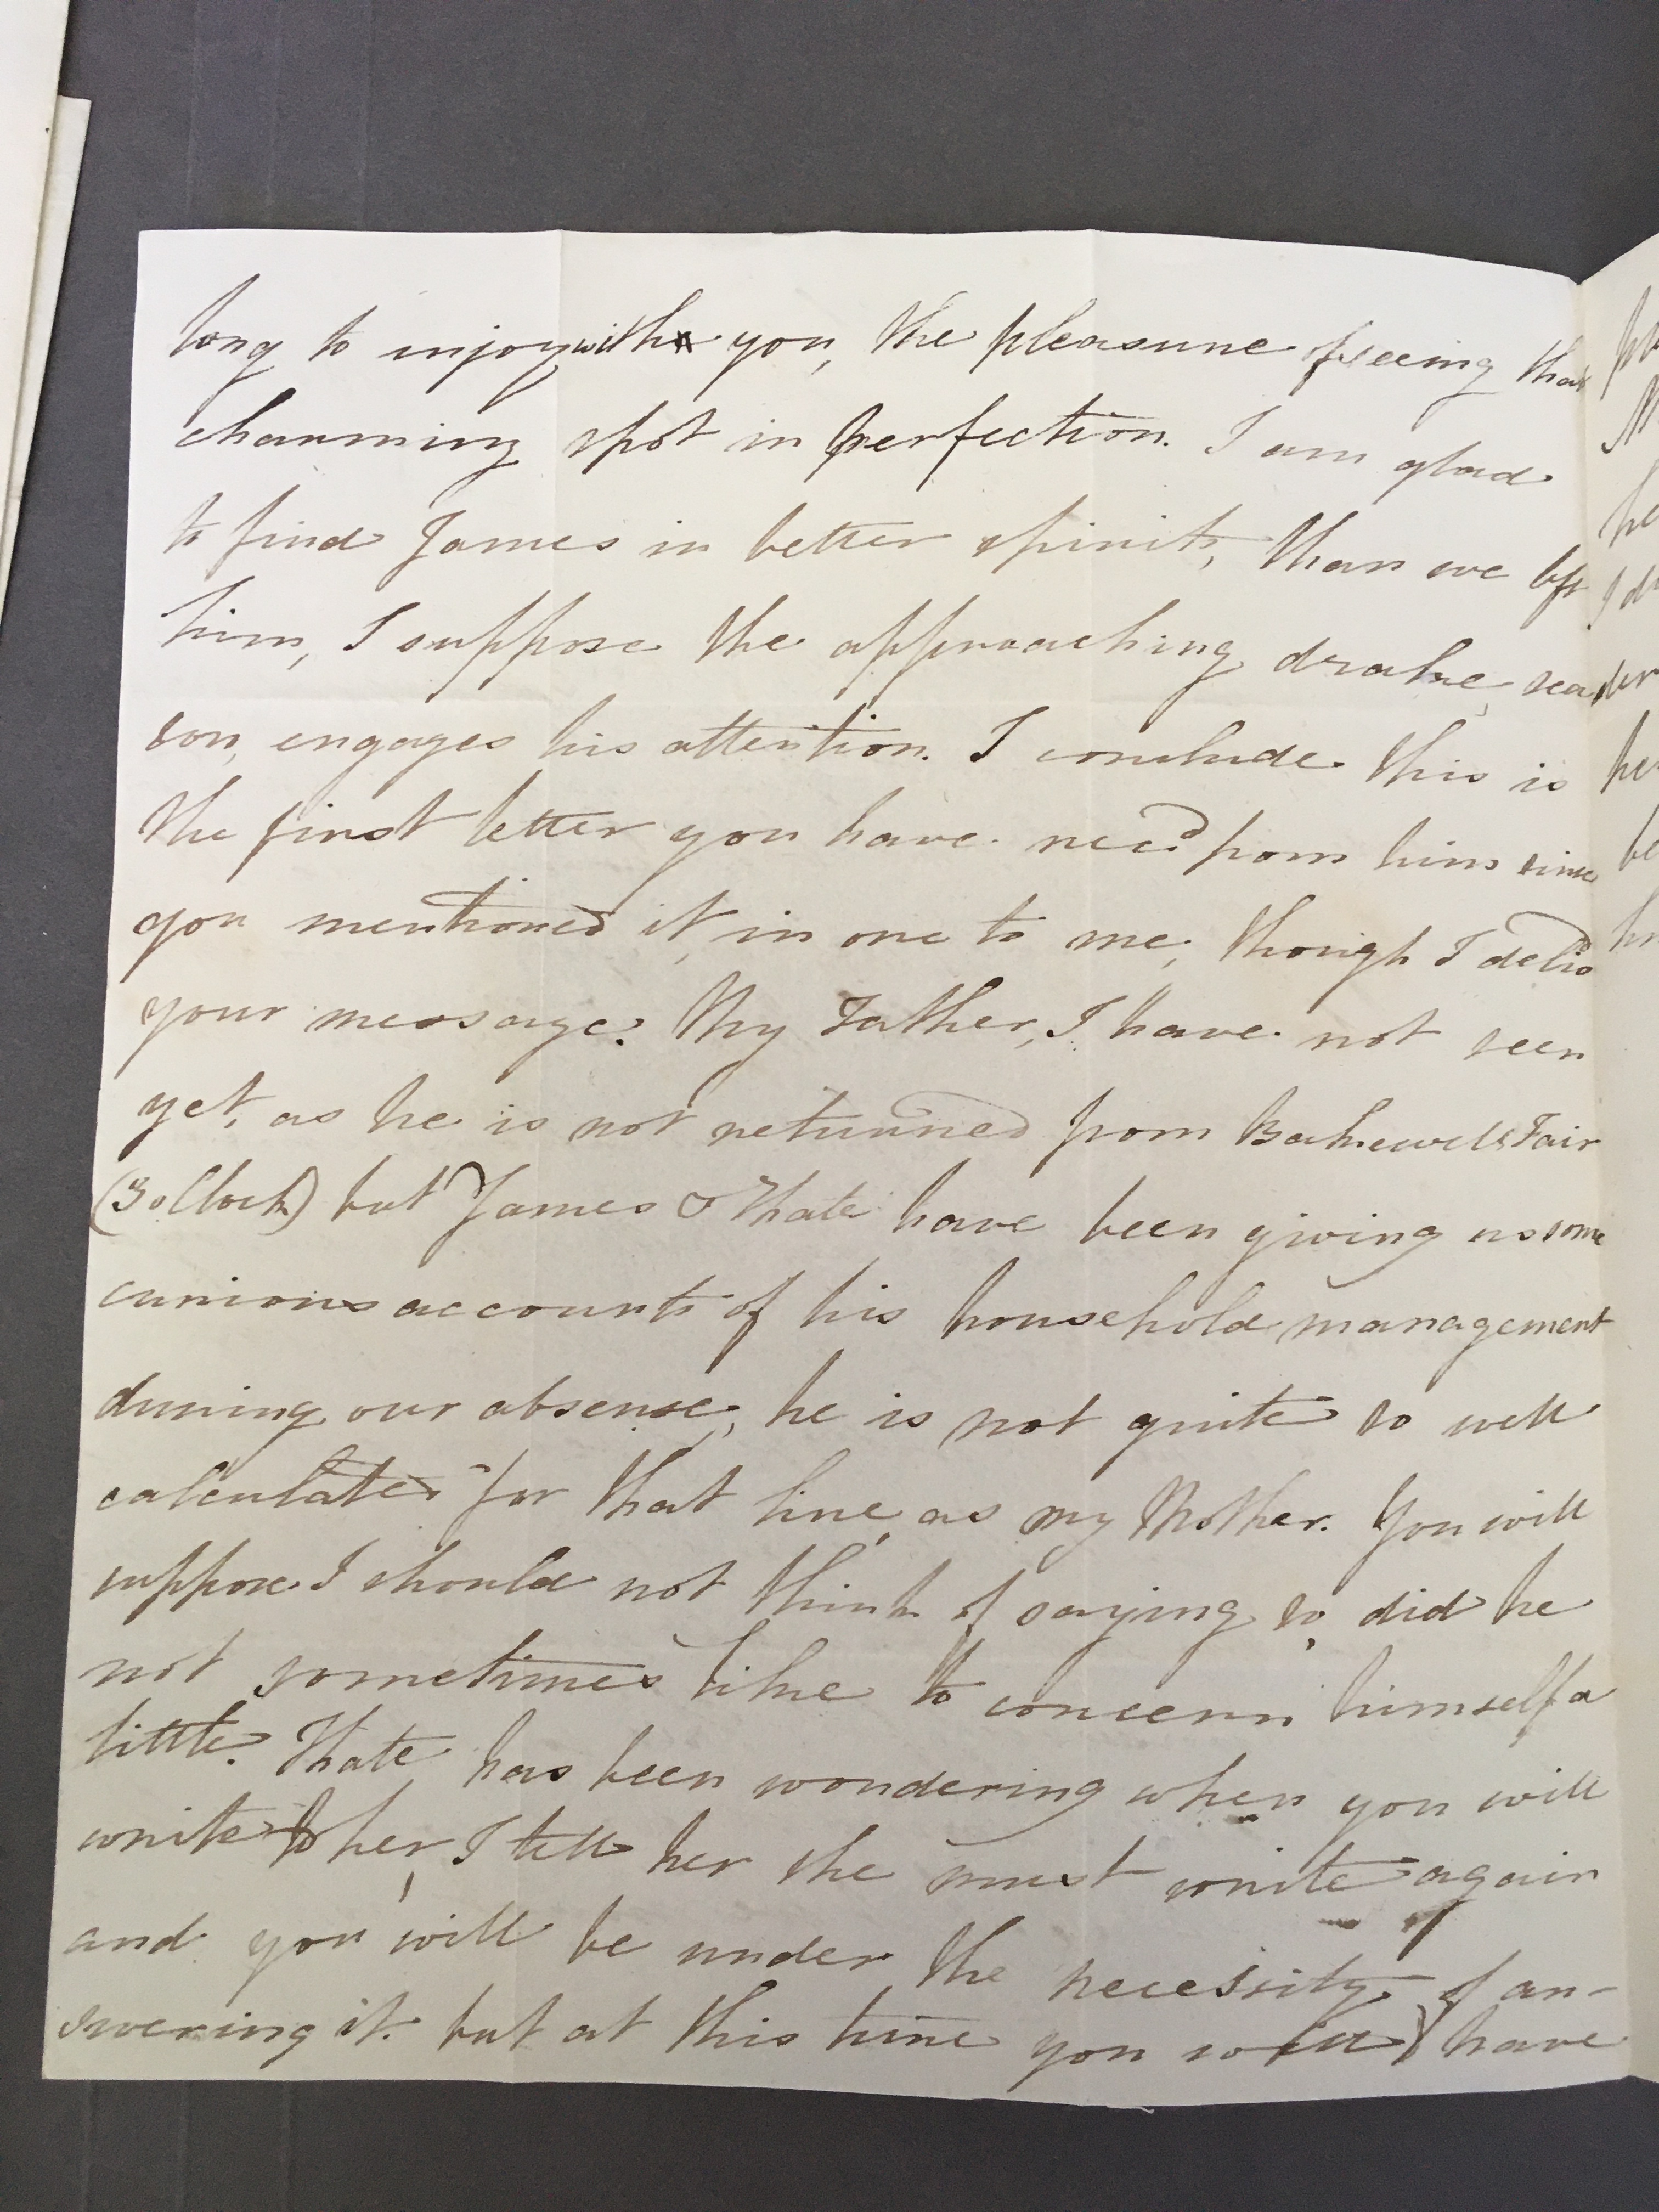 Image #2 of letter: Elizabeth Longsdon (jnr) to John Longsdon, 3 June 1810